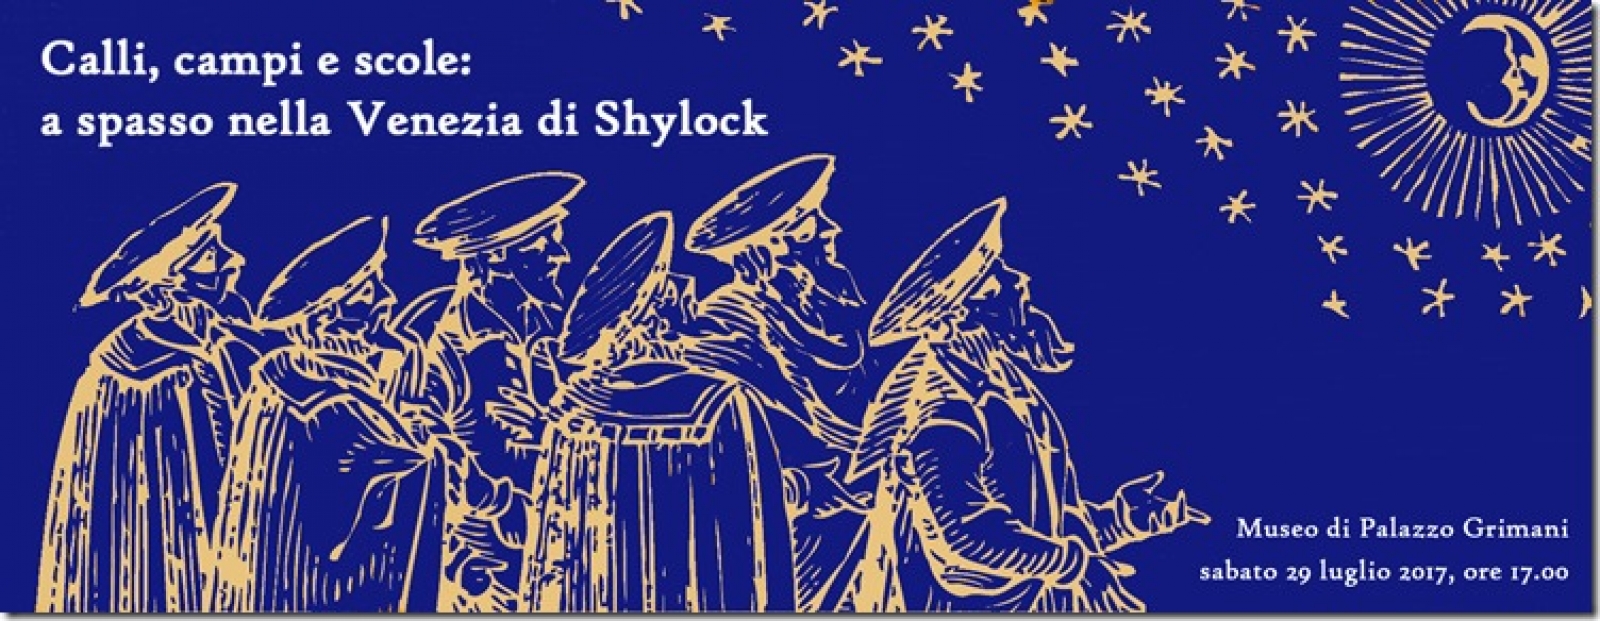 Poster of the concert "Calli, campi e scole: a spasso nella Venezia di Shylock"